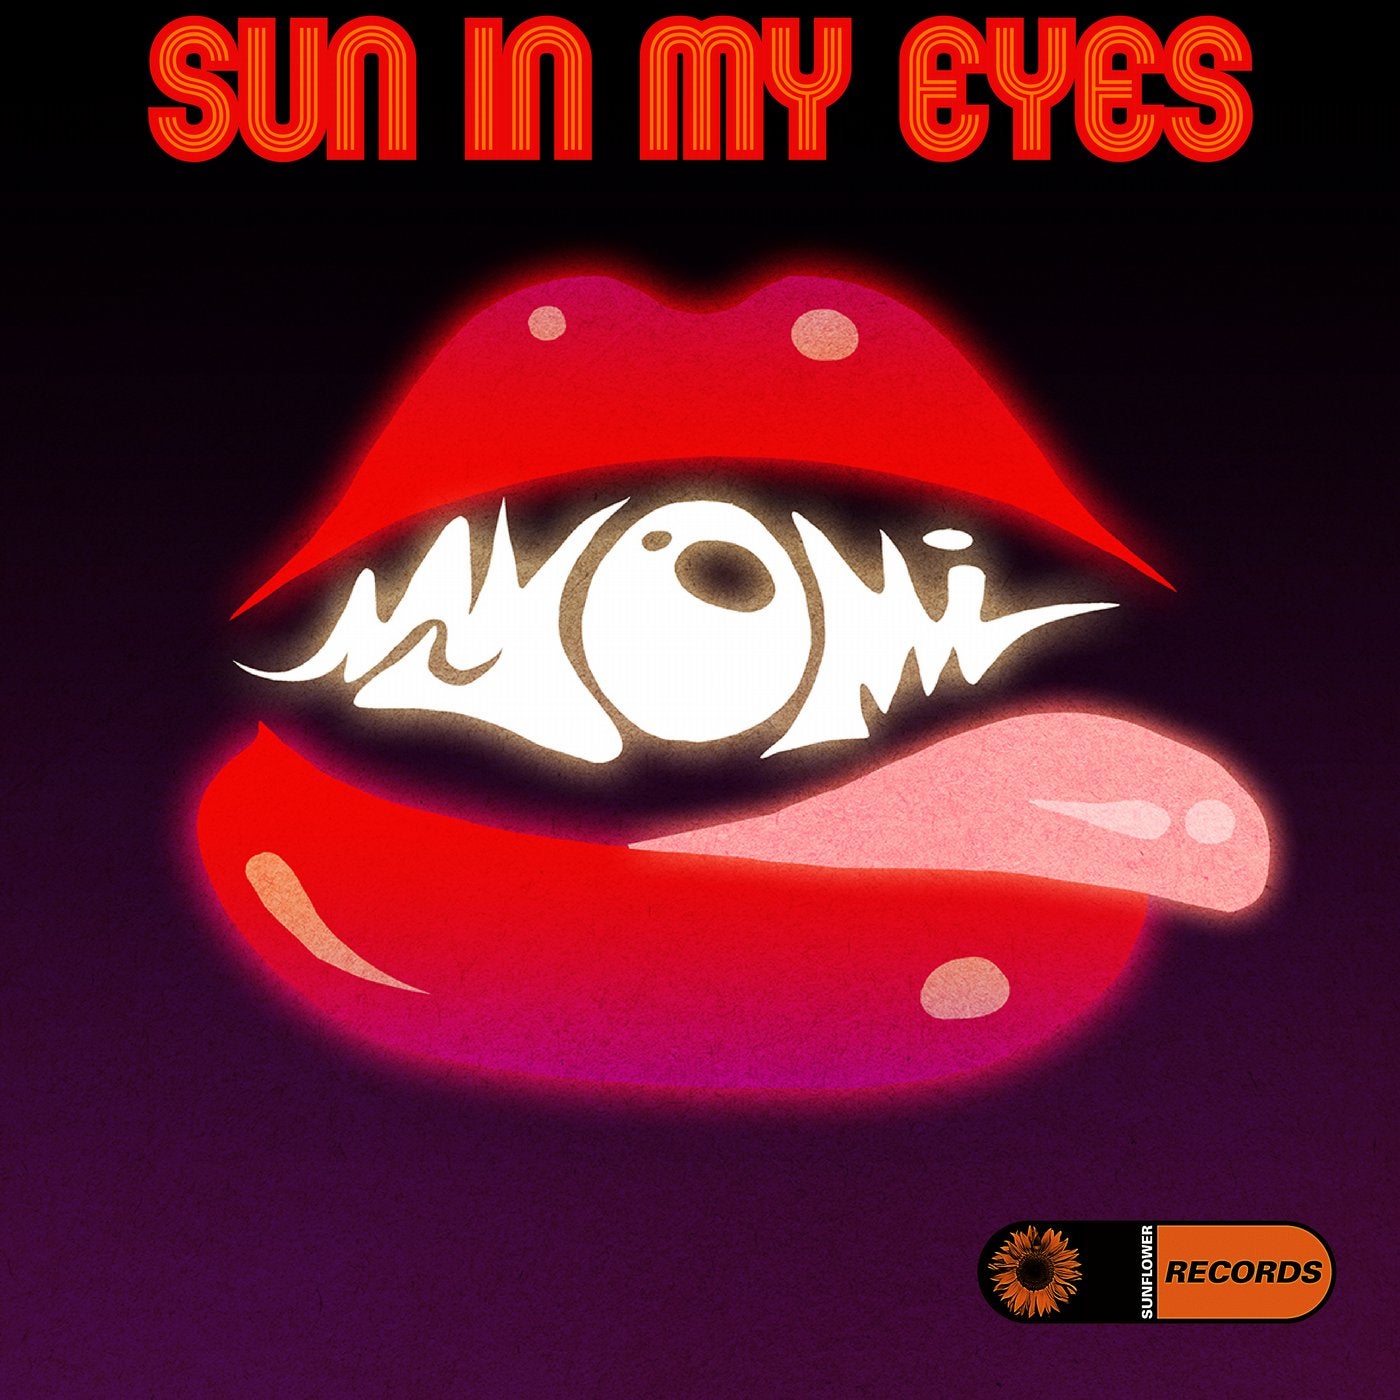 Sun In My Eyes